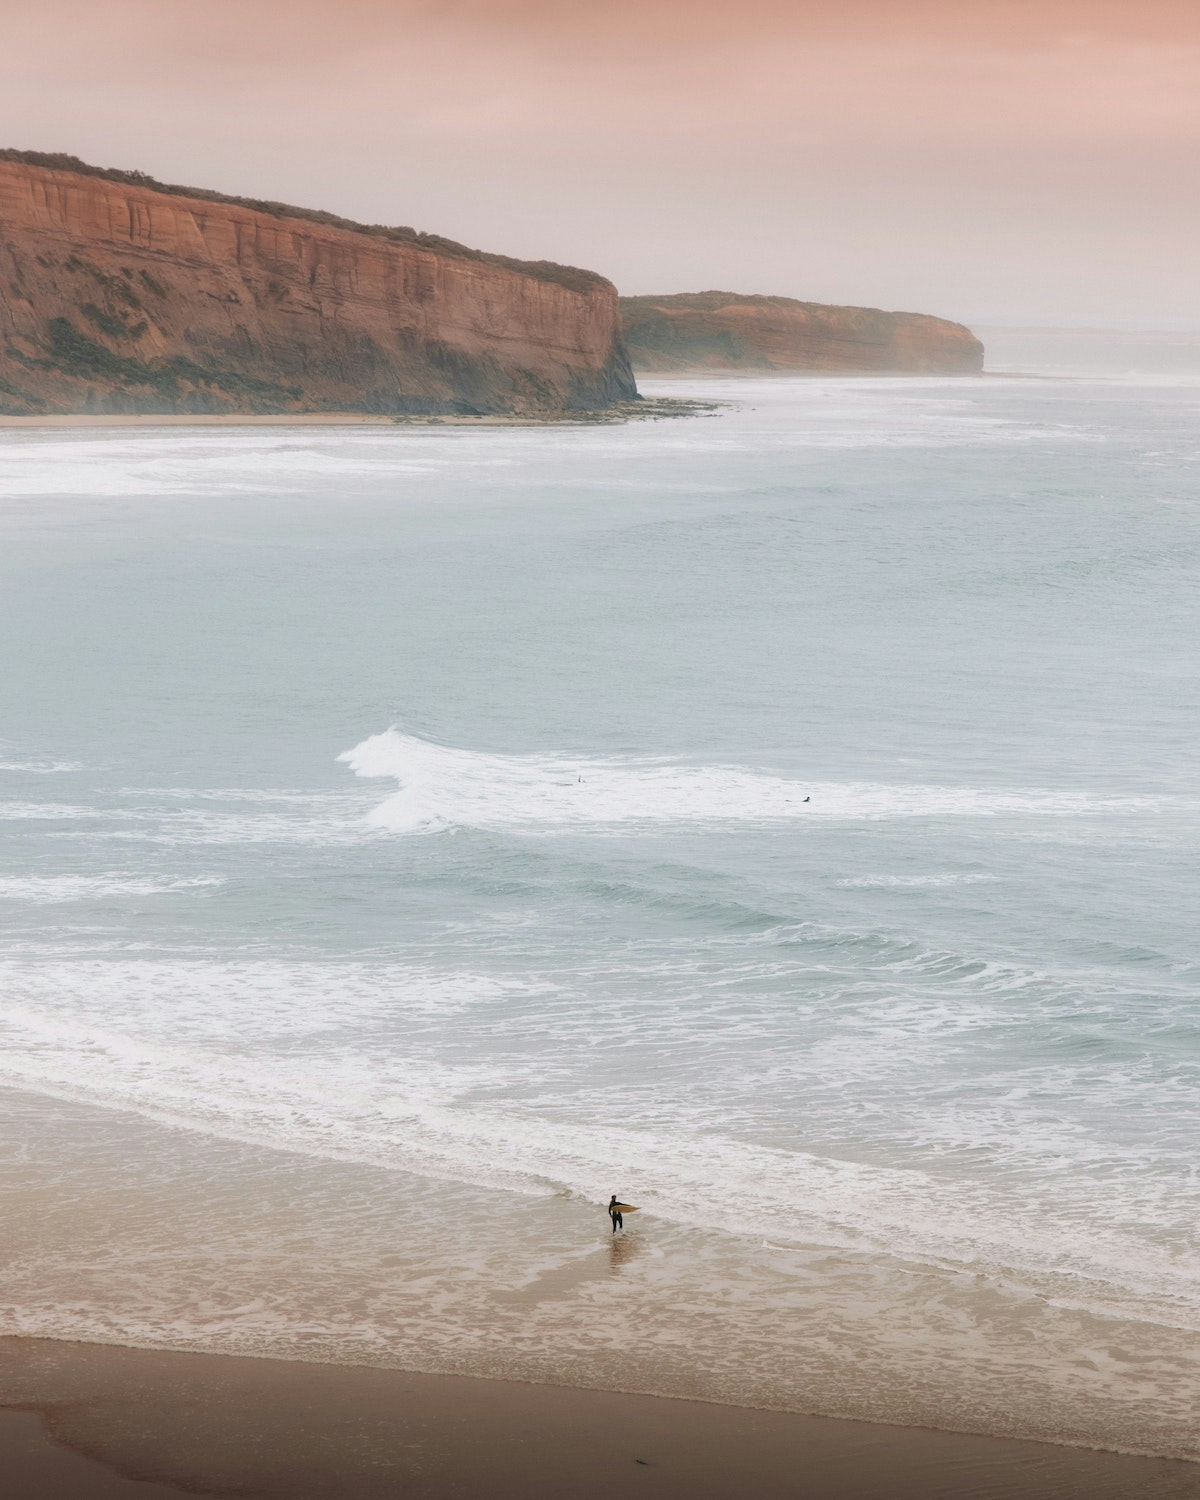 Surfer on a clean beach